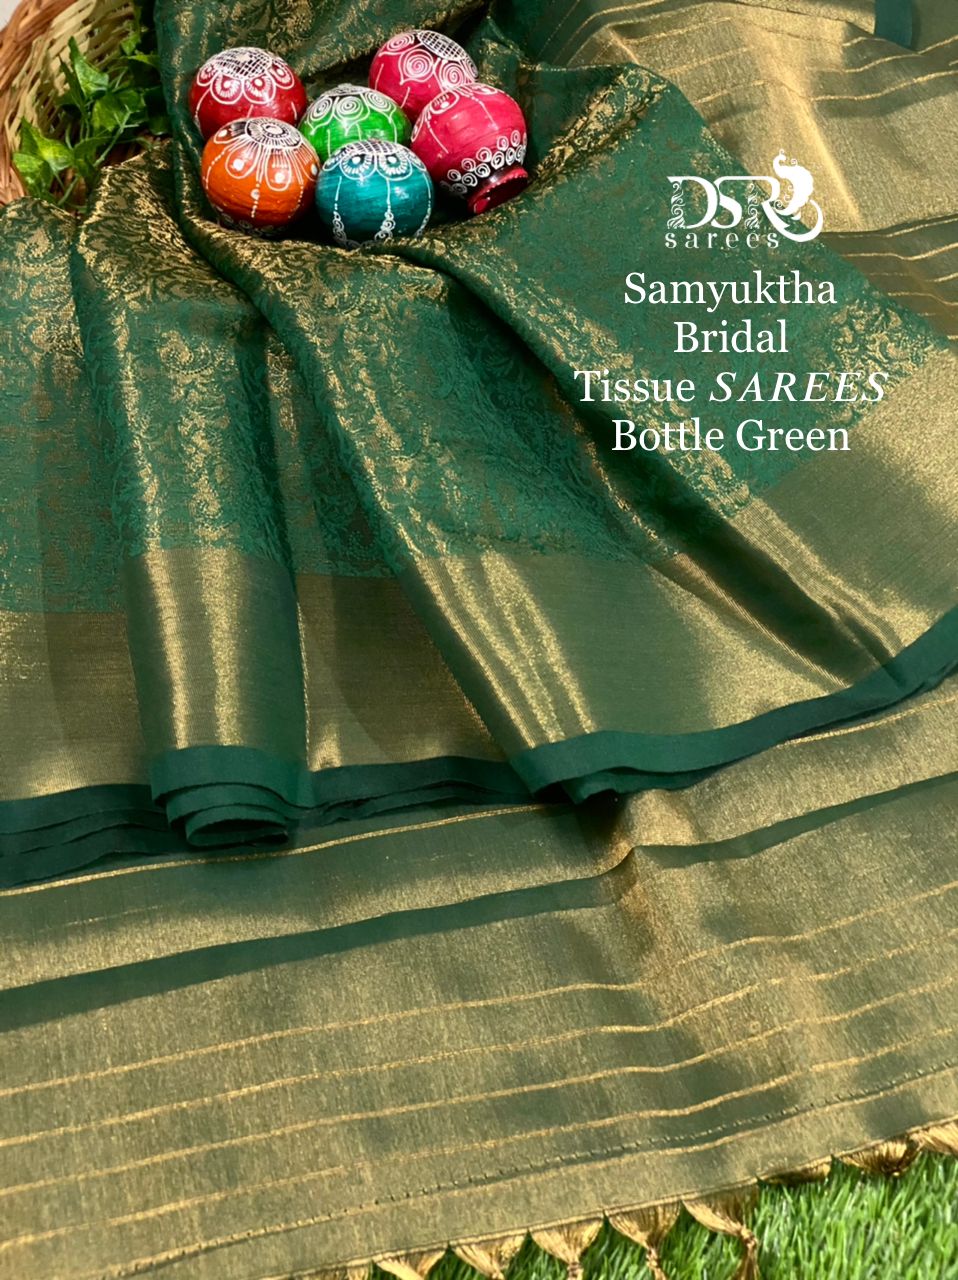 Samyuktha Bridal Tissue Sarees